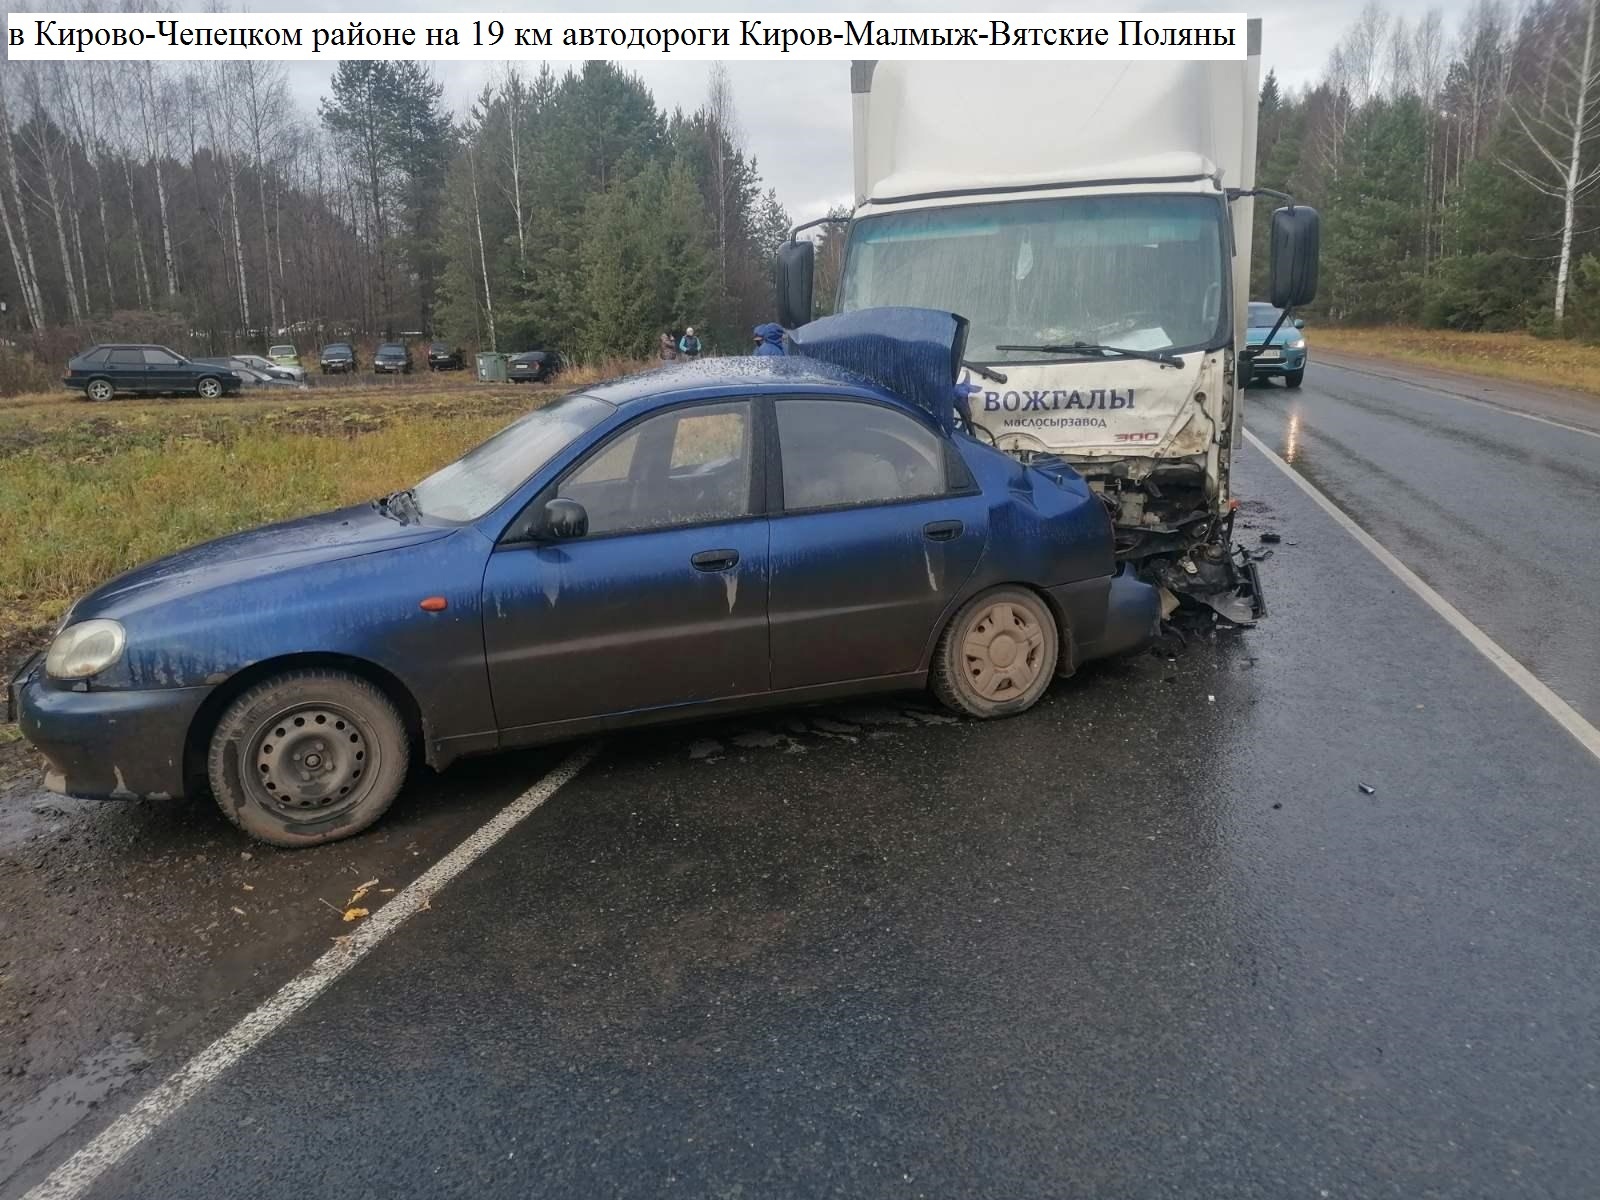 В Кирово-Чепецком районе в ДТП пострадали два человека 